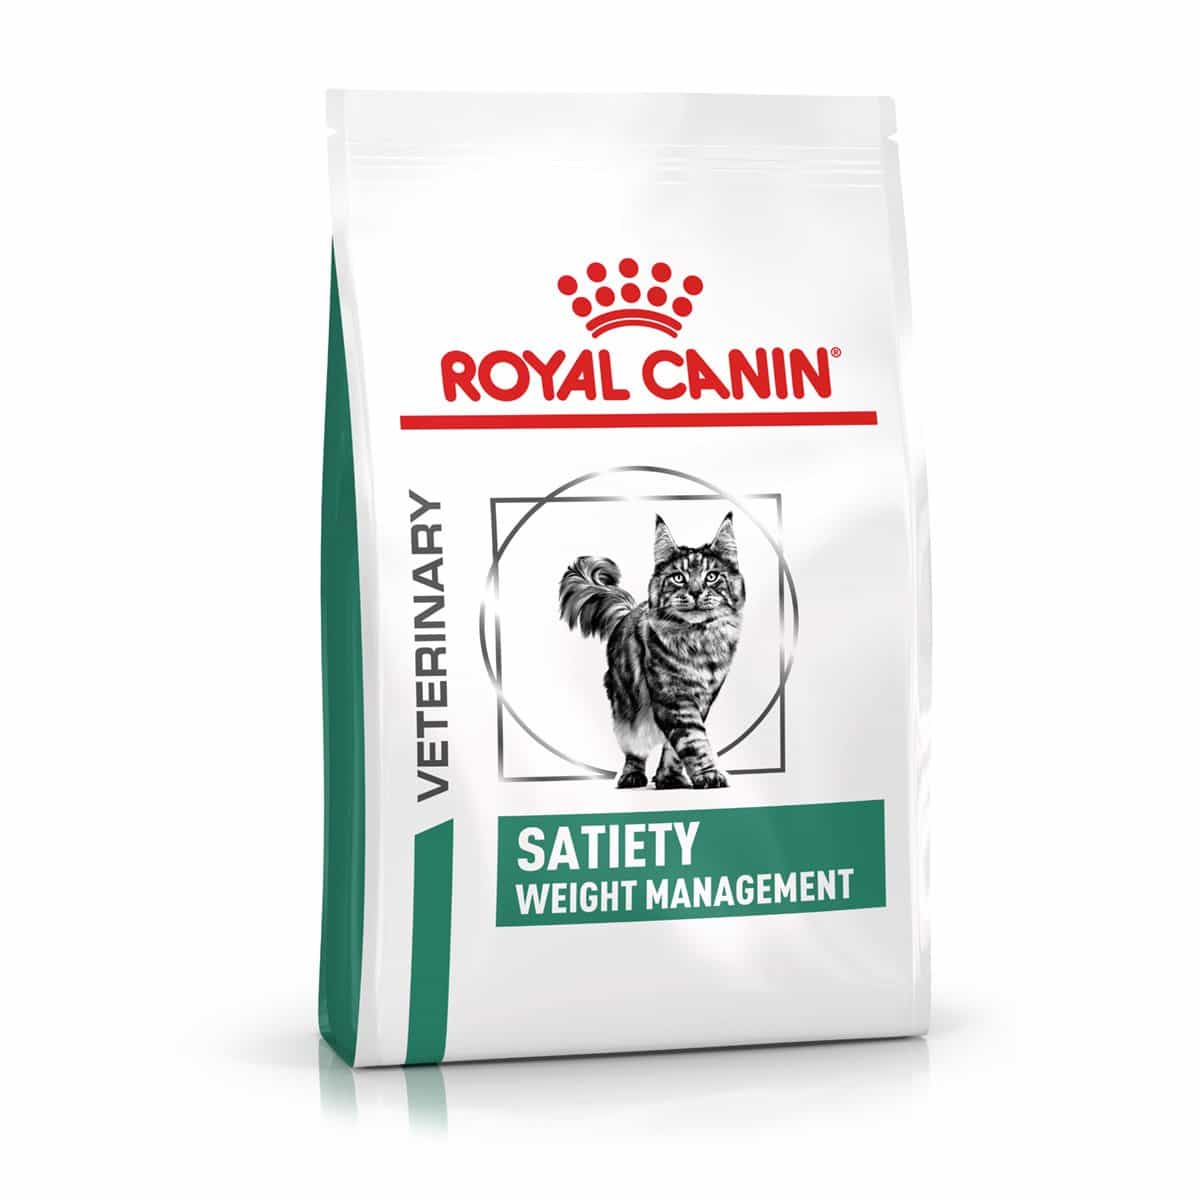 ROYAL CANIN® Veterinary SATIETY WEIGHT MANAGEMENT Trockenfutter für Katzen 1